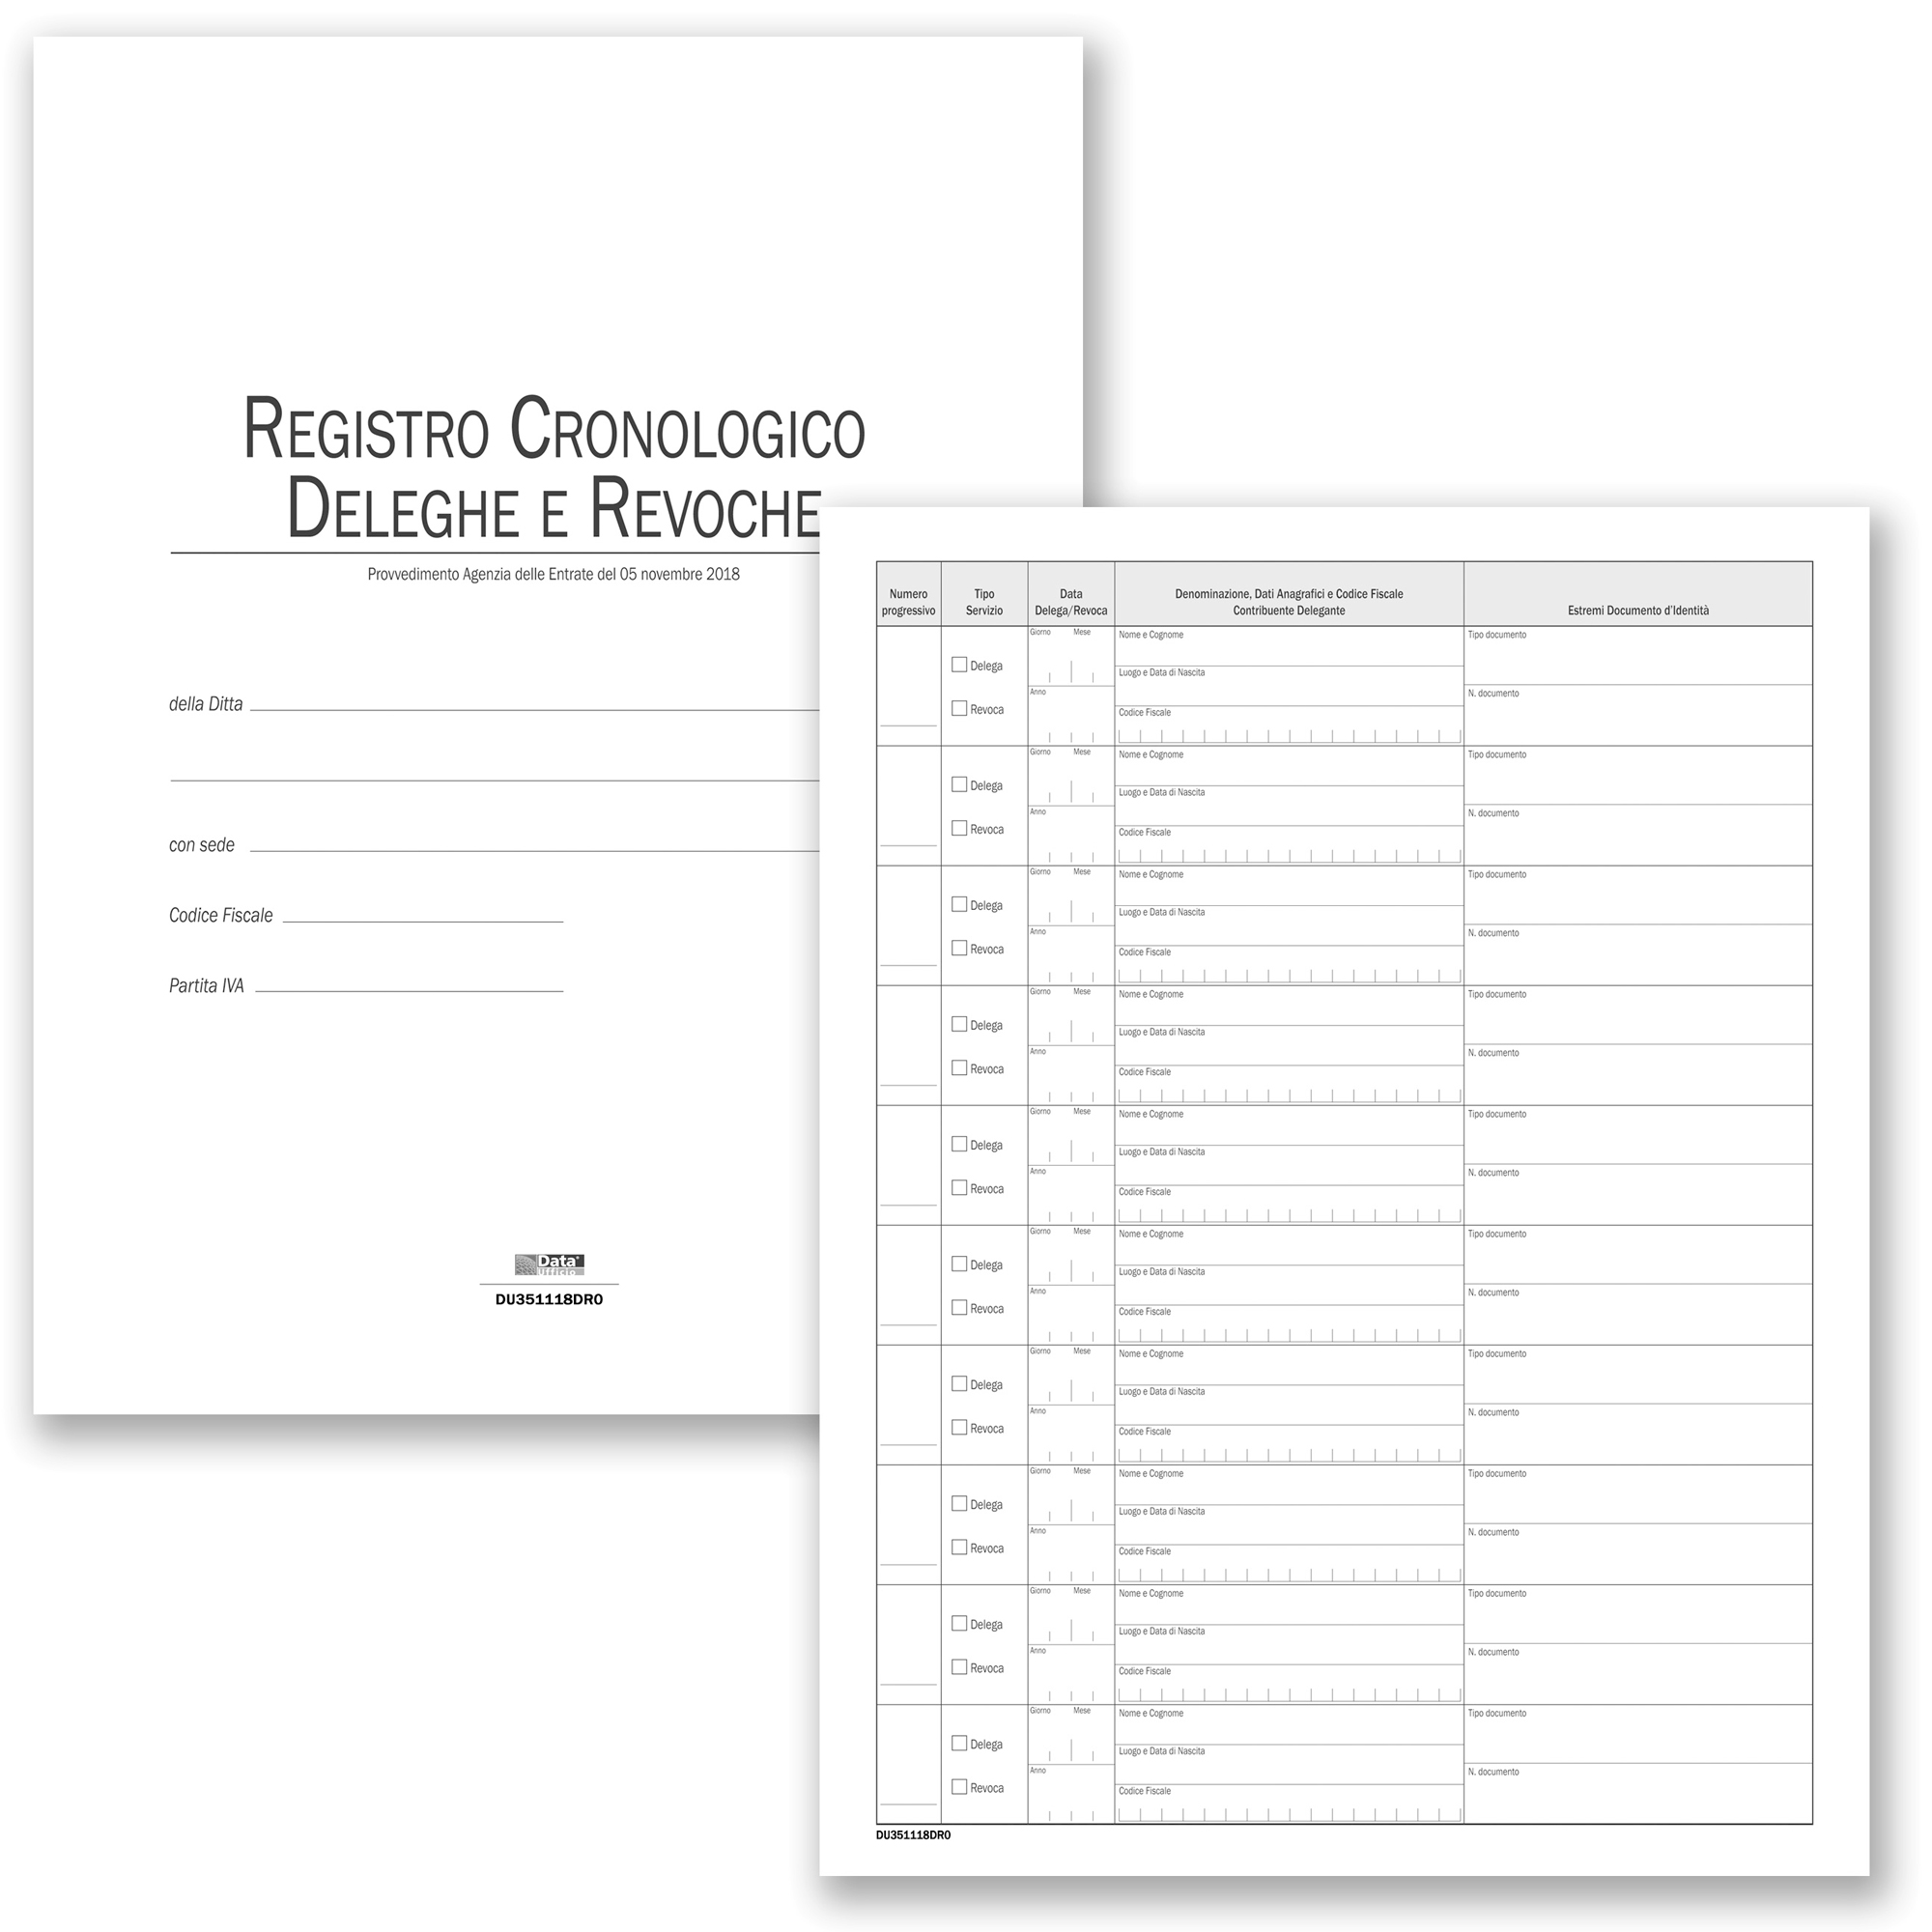 Registro cronologico deleghe e revoche - 48 pagine - 31 x 24,5 cm - DU351118DR0 - Data Ufficio